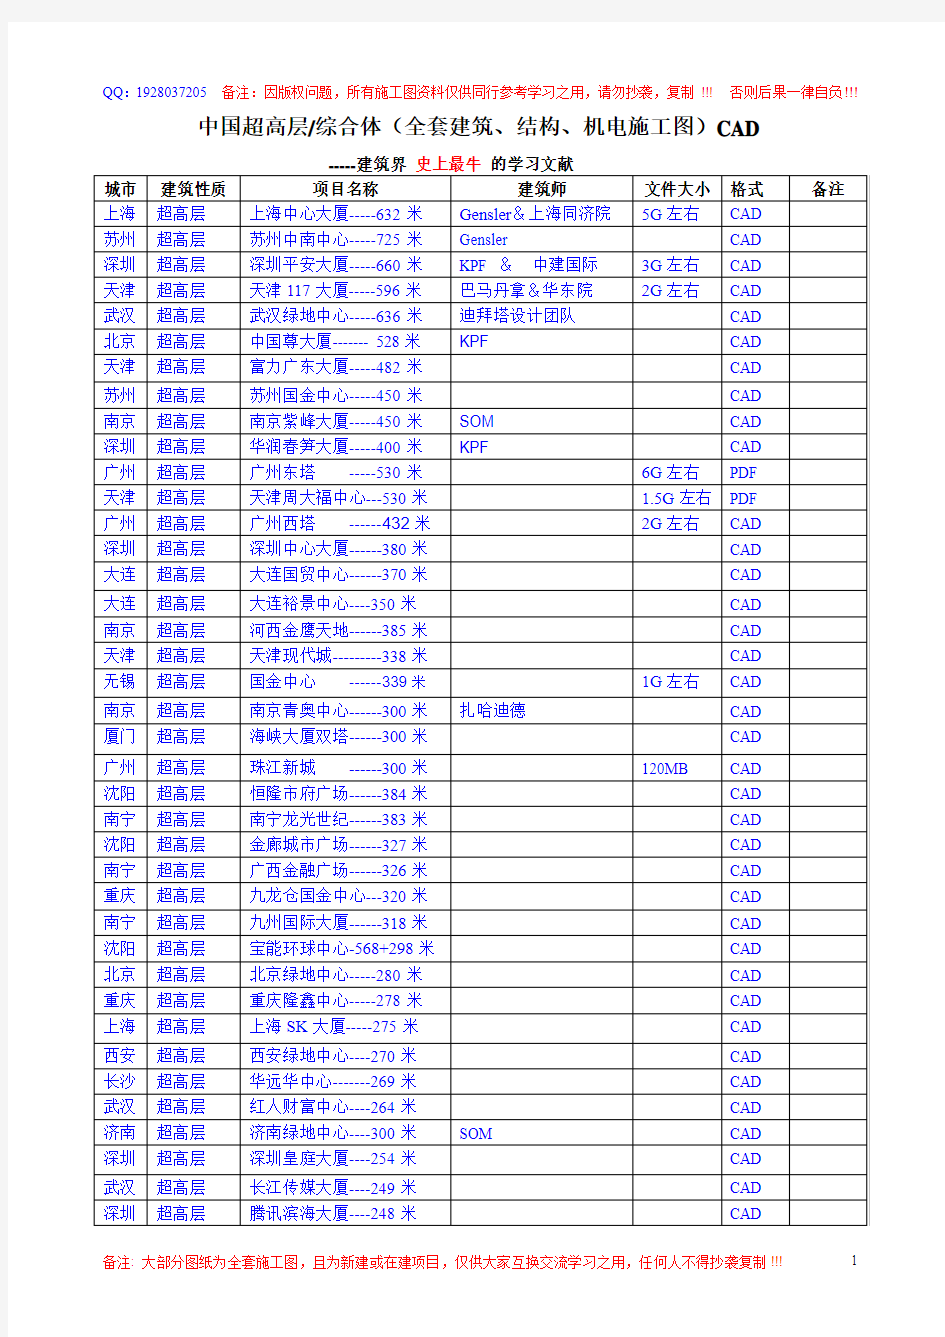 中国超高层、综合体(施工图)清单14.10.30